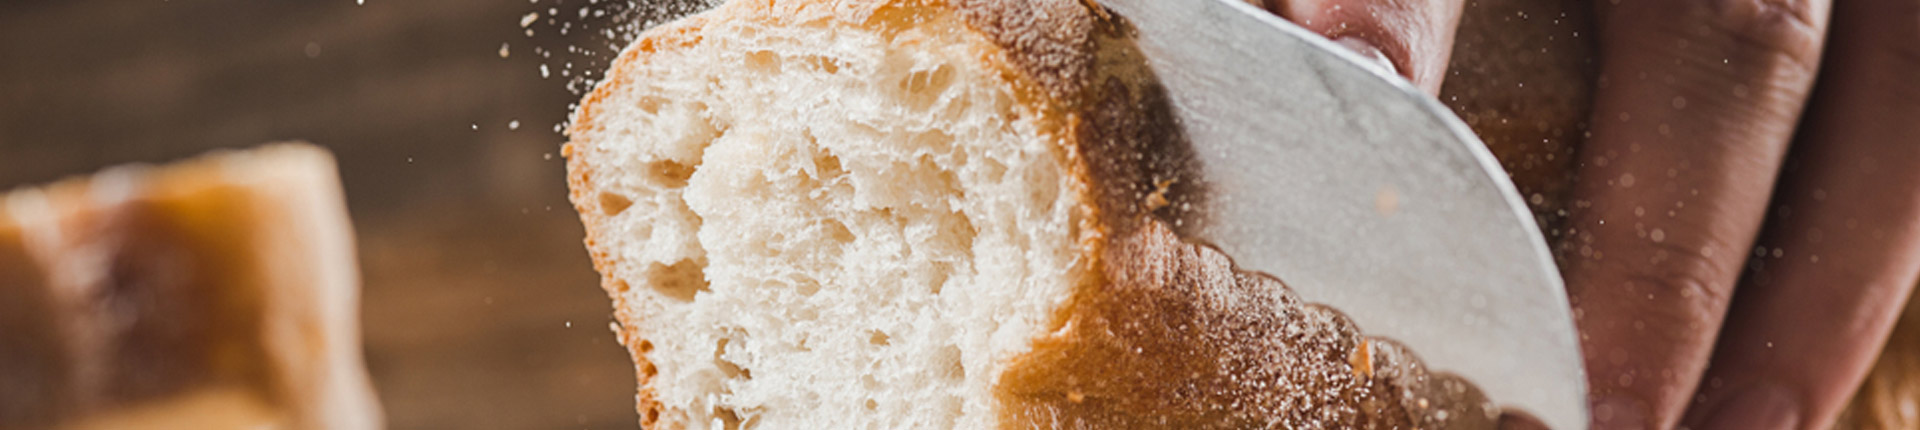 Co zamiast chleba pszennego?